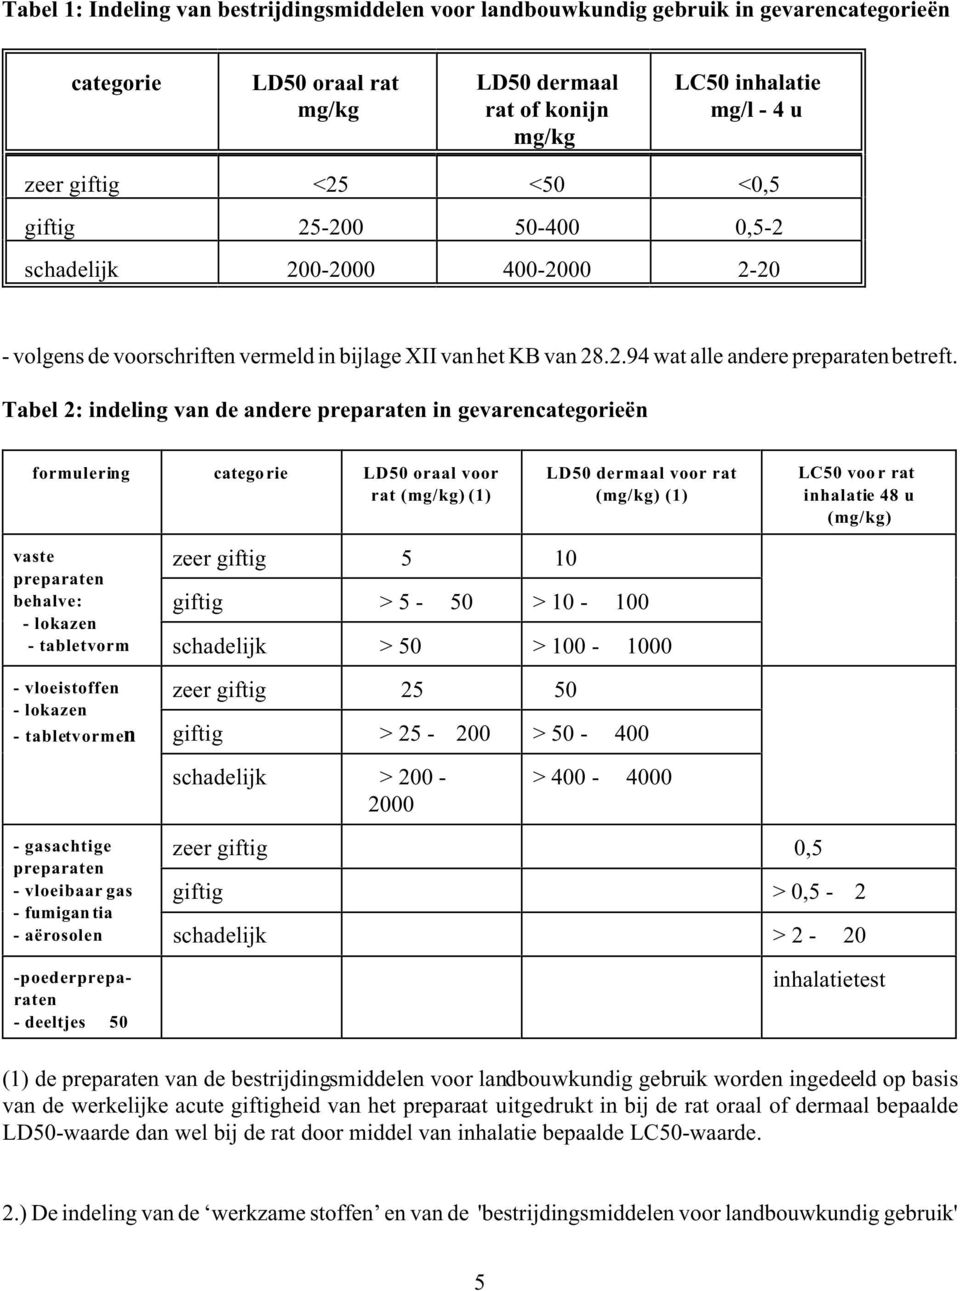 Tabel 2: indeling van de andere preparaten in gevarencategorieën formulering categorie LD50 oraal voor rat (mg/kg) (1) LD50 dermaal voor rat (mg/kg) (1) LC50 voor rat inhalatie 48 u (mg/kg) vaste